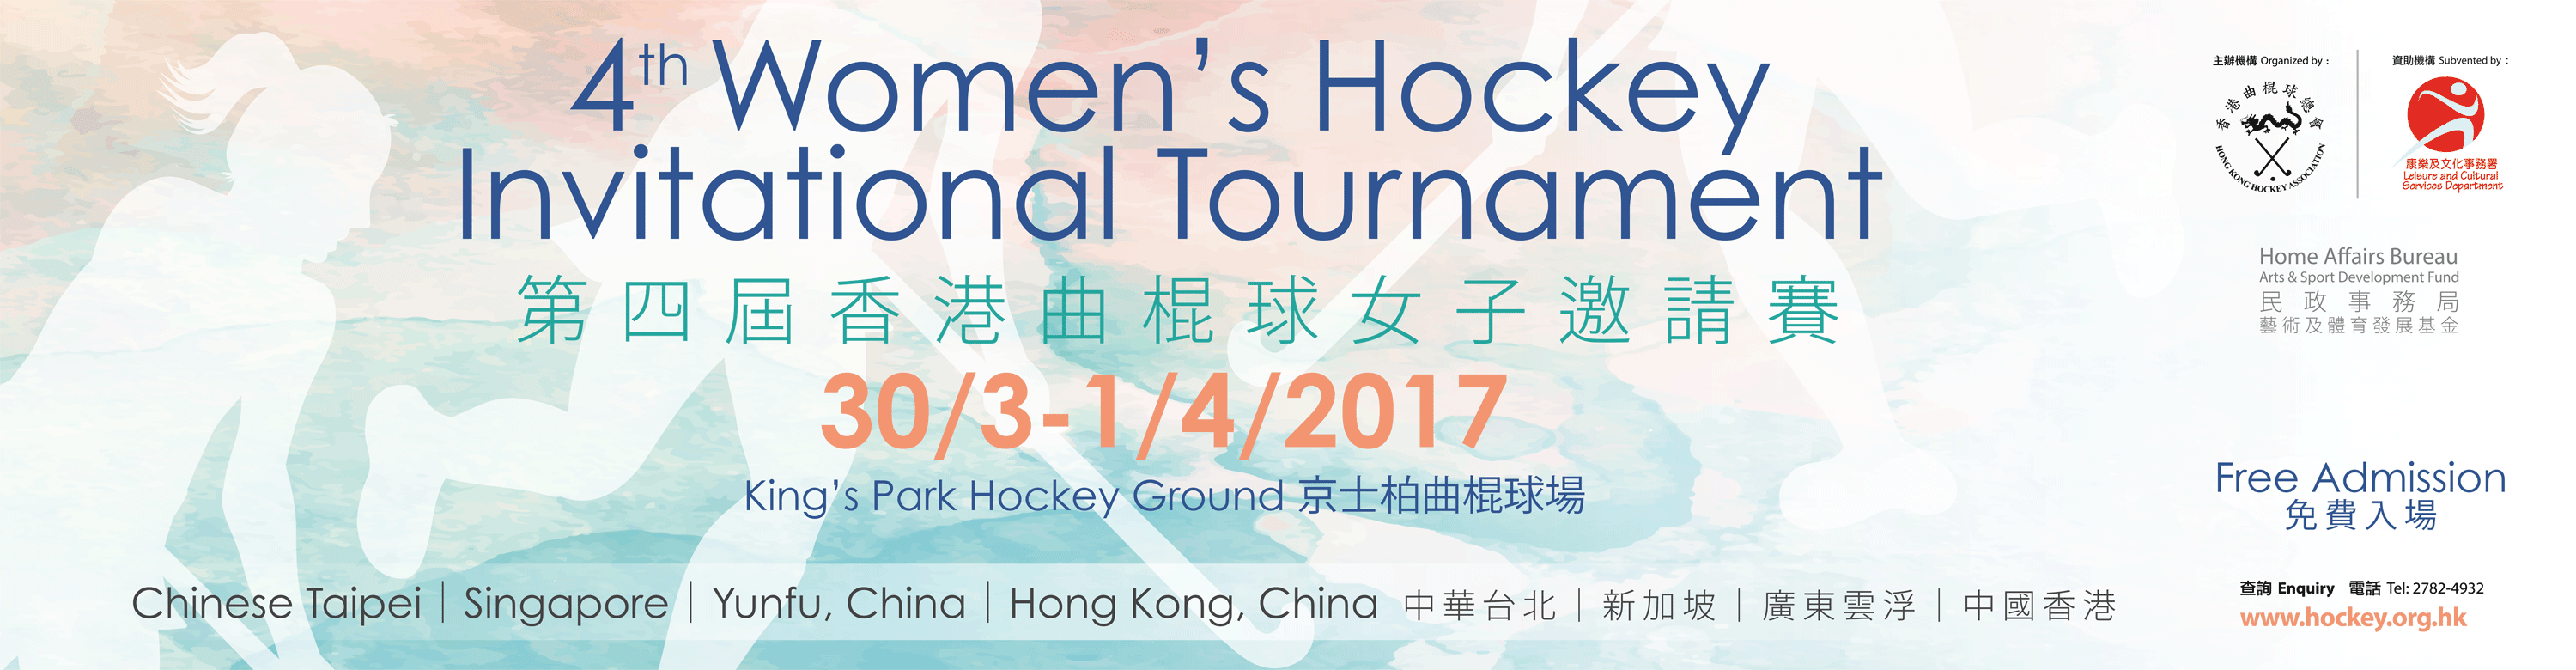 4th Women's Invitational Tournament